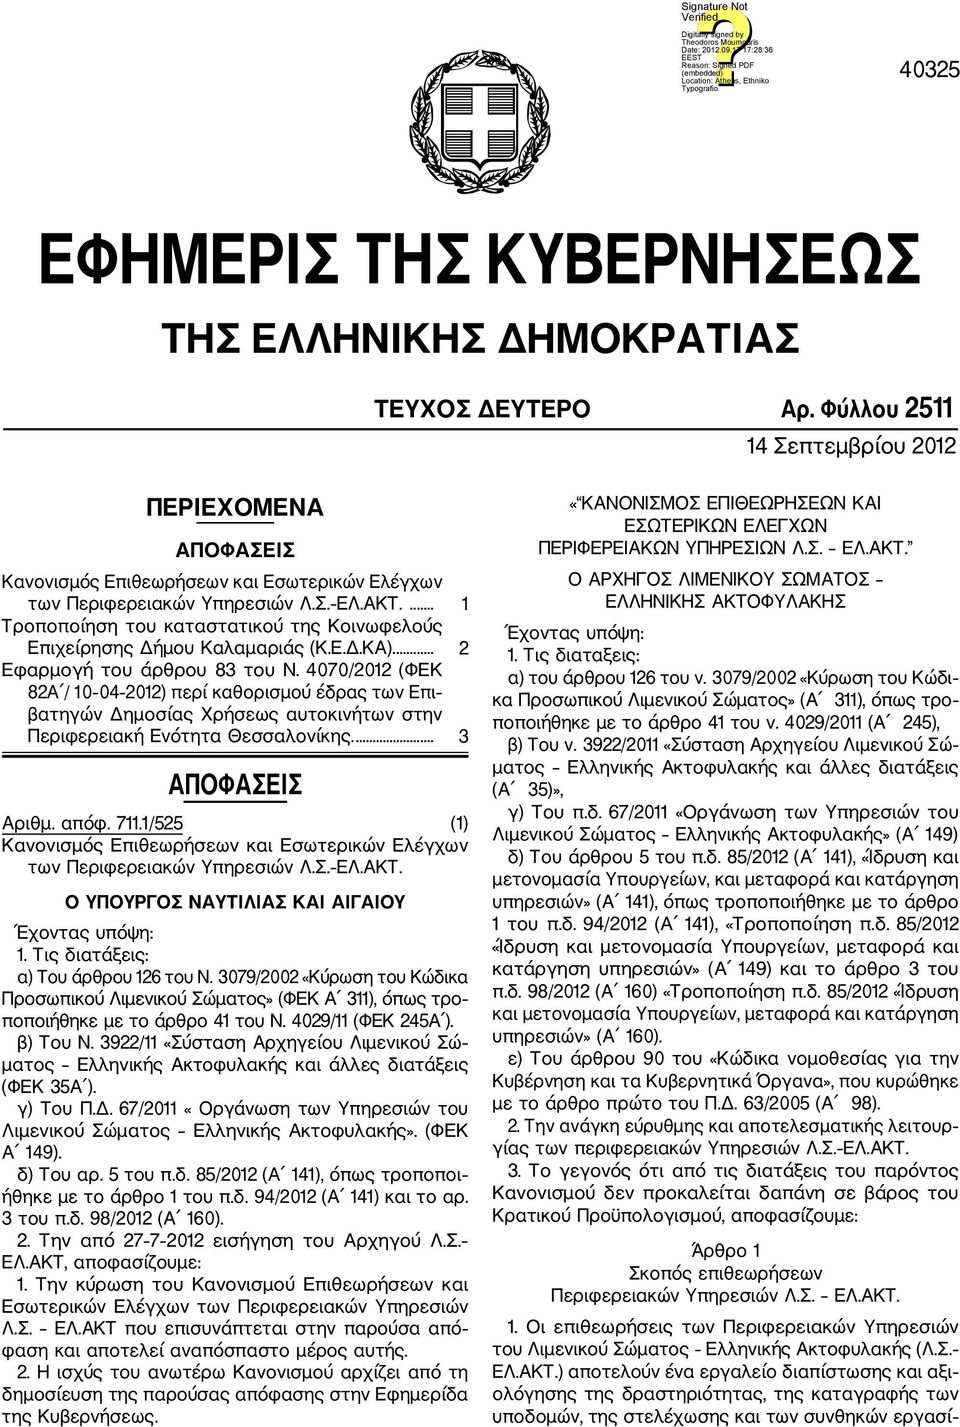 ... 1 Τροποποίηση του καταστατικού της Κοινωφελούς Επιχείρησης Δήμου Καλαμαριάς (Κ.Ε.Δ.ΚΑ).... 2 Εφαρμογή του άρθρου 83 του Ν.